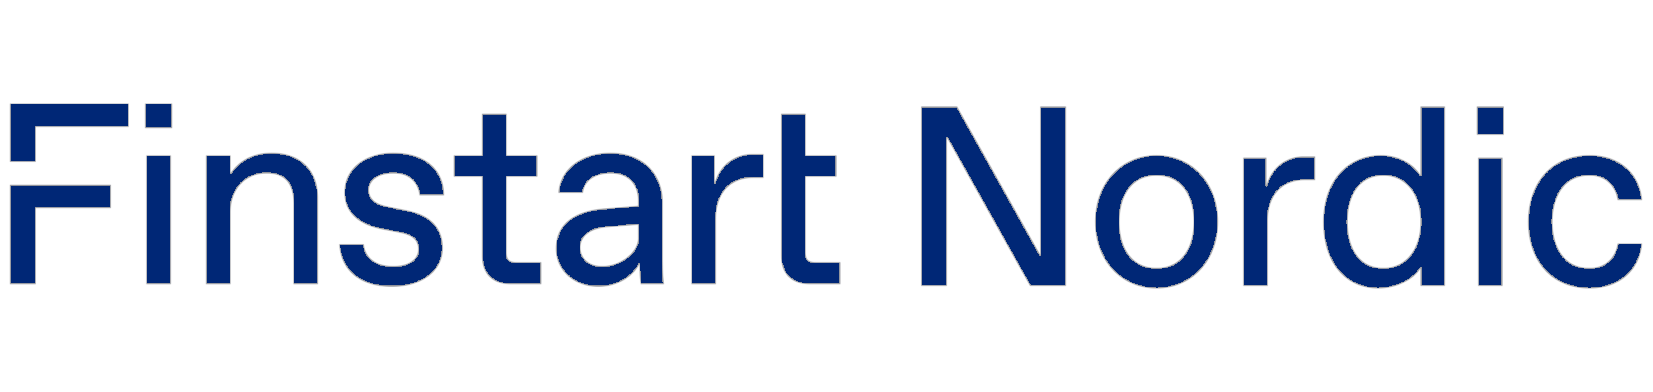 Finstart Logo